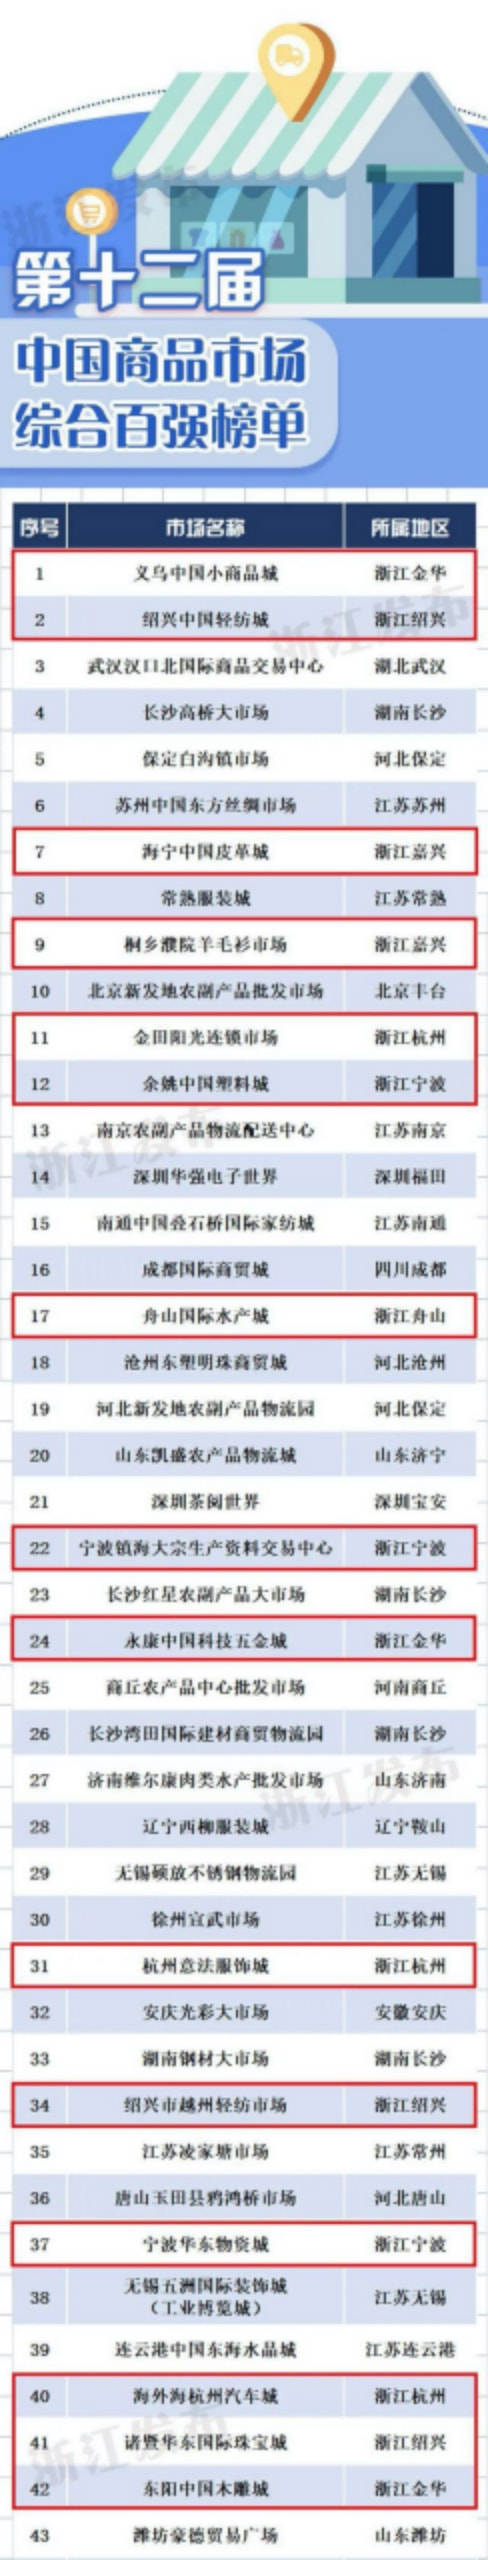 中国批发市场排行榜_2021年1-10月中国房地产企业销售top100排行榜